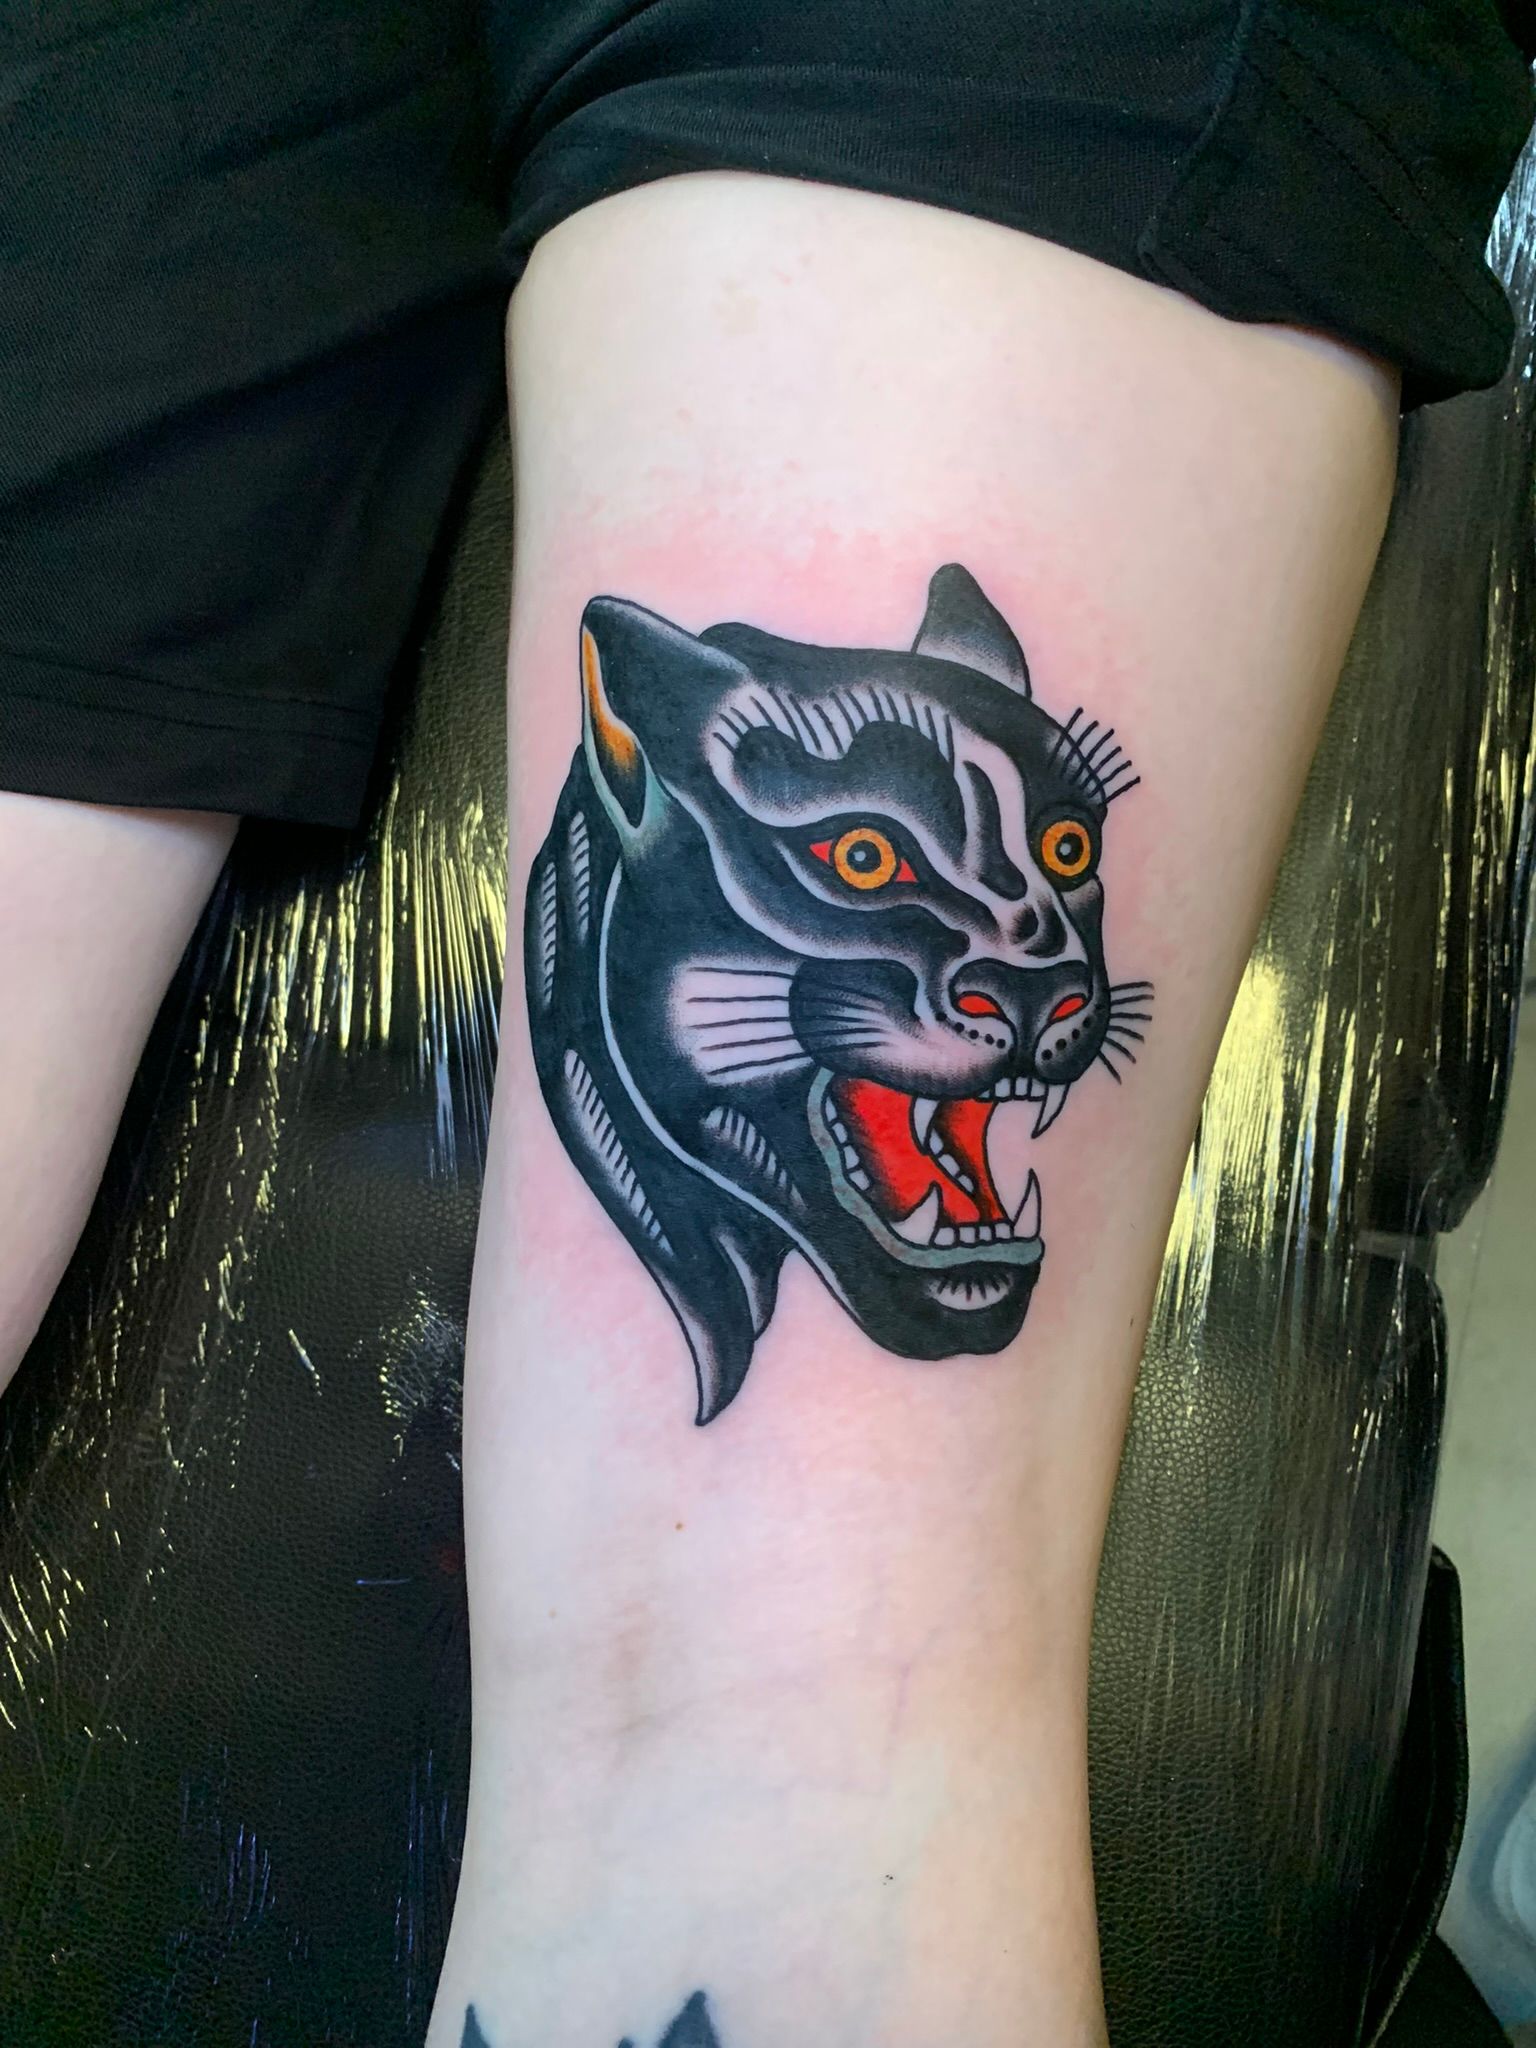 Kraken Tattoo - Panther #ink #inked #inkedup #panther #panthertattoo #tattoo  #tatuaje #tatouage #tatuagem #tatuaggio #وشم #刺青 #bng #blagkandgrey  #blackandgreytattoo #realism #realistictattoo #tattoorealistic  #cheyennetattooequipment #worldfamousink ...